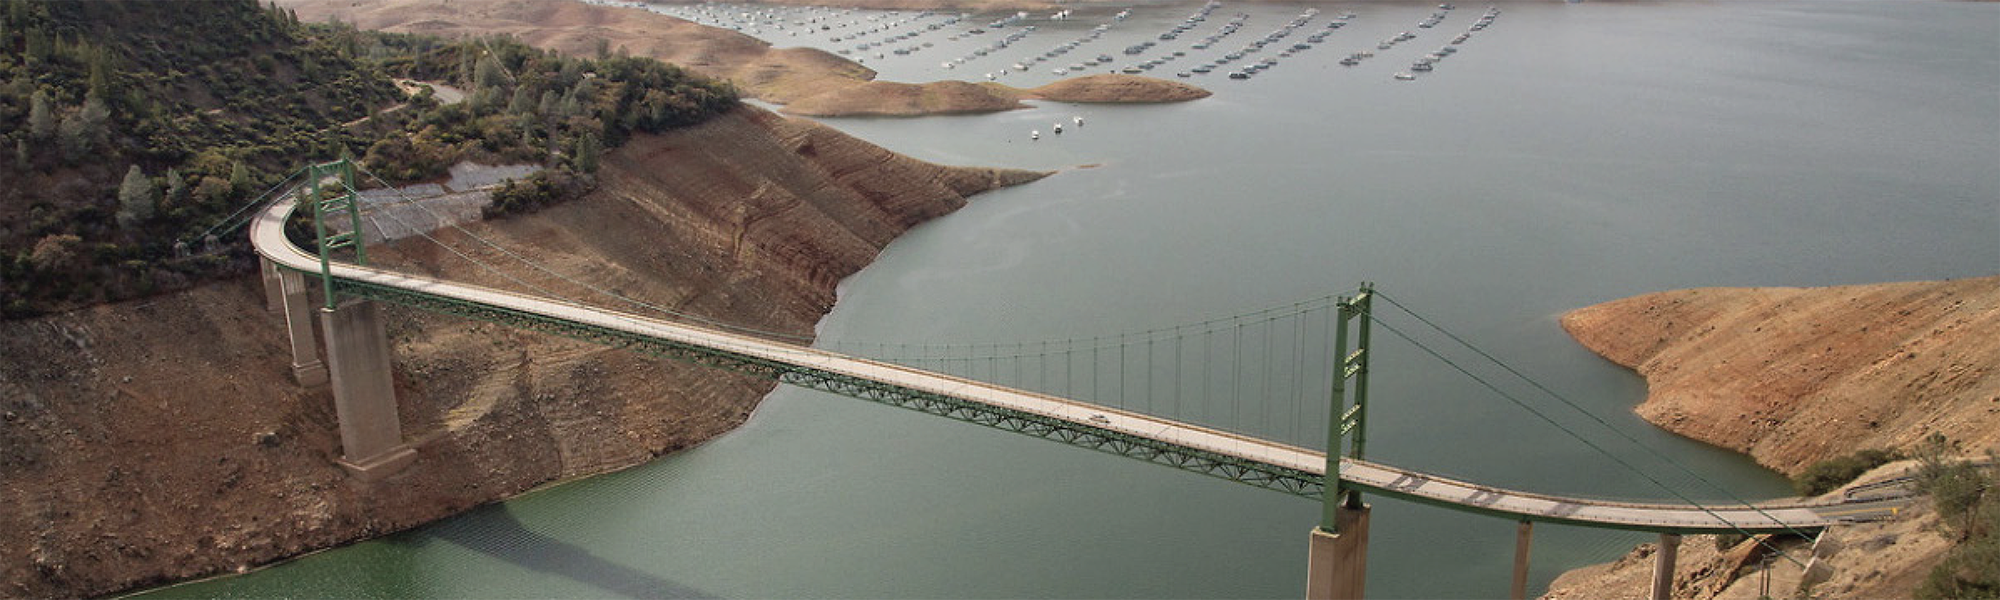 Zakład Ecolab City of Industry w Kalifornii uzyskał certyfikat zarządzania zasobami wodnymi